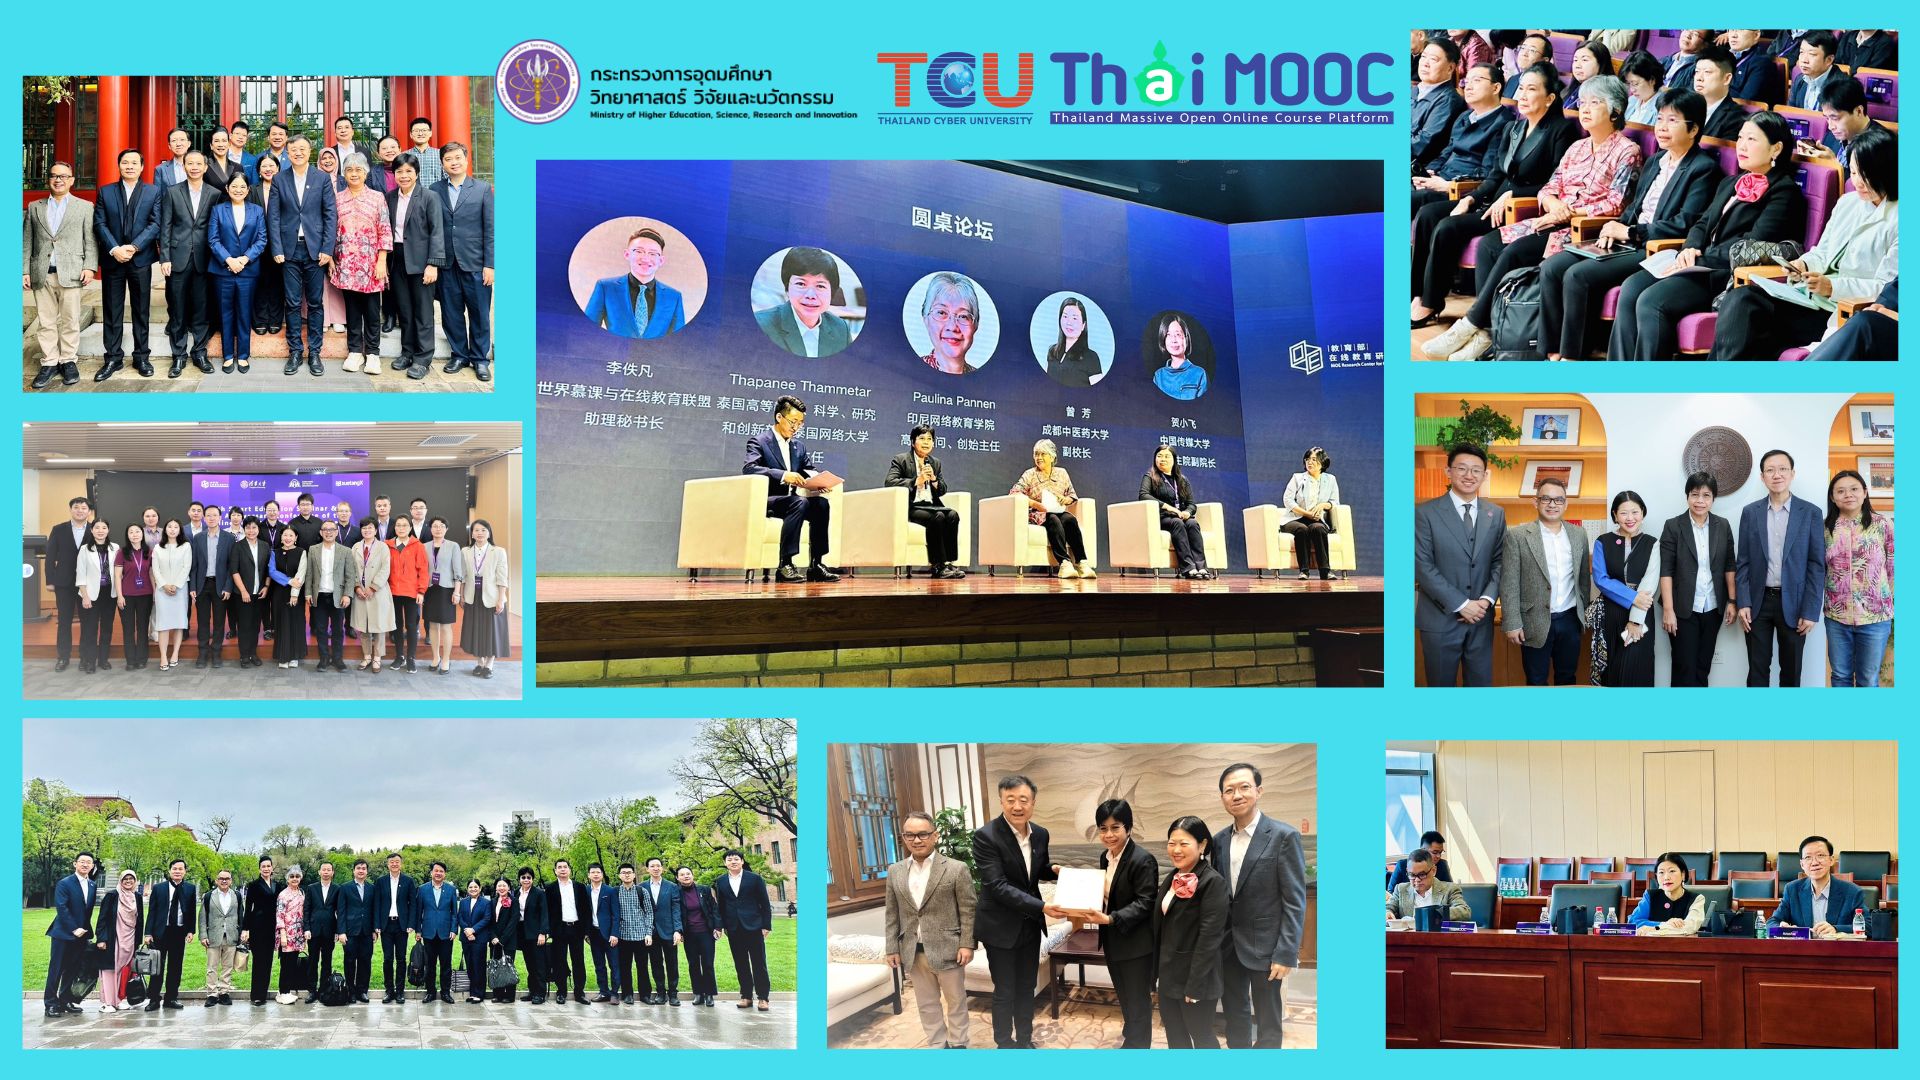 งานสัมมนา Smart Education ครั้งที่ 6 และ งานประชุมวิชาการ Anniversary Conference of the Online Education Research Center กระทรวงศึกษาธิการแห่งสาธารณรัฐประชาชนจีน ครั้งที่ 10 ณ มหาวิทยาลัย Tsinghua กรุงปักกิ่ง สาธารณรัฐประชาชนจีน 